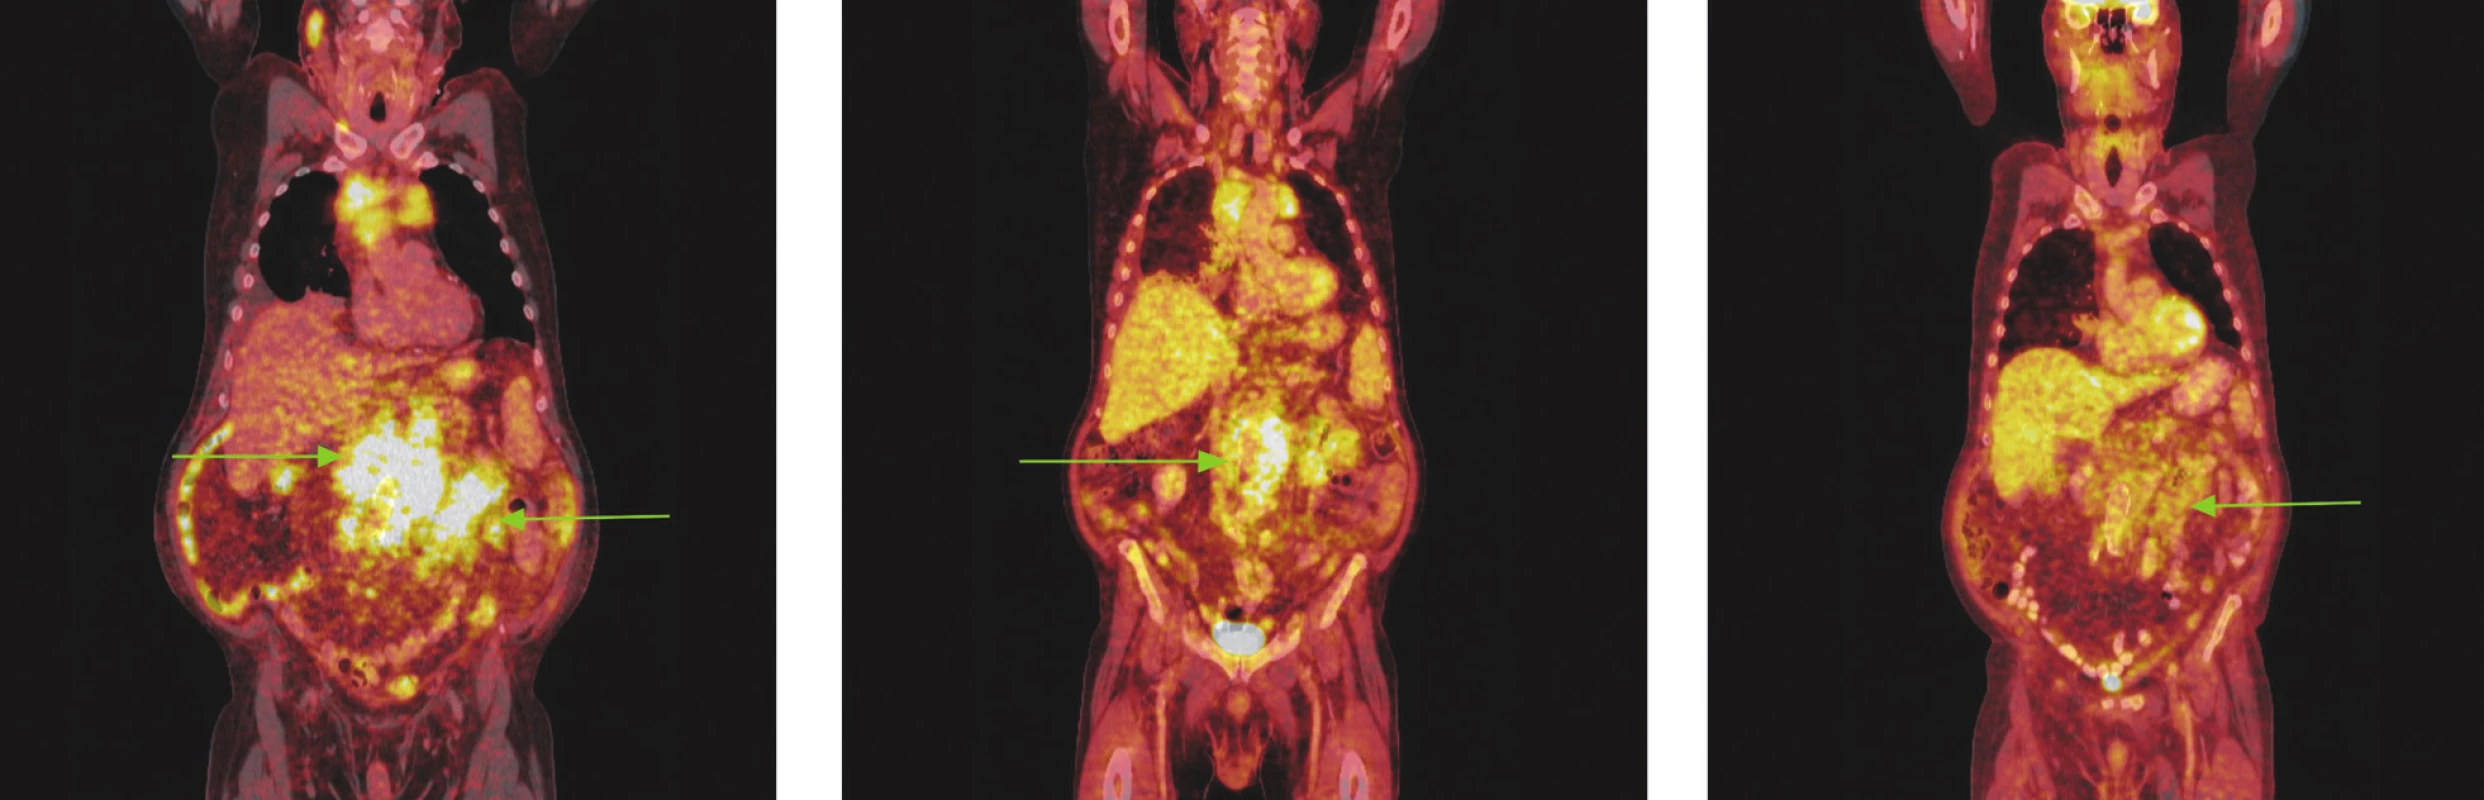 Série PET/CT snímků u nemocného s folikulárním lymfomem před léčbou, po 2 cyklech léčby a po záchranné chemoterapii. Na prvním snímku nalezen hypermetabolismus glukózy ve zvětšených lymfatických uzlinách a jejich paketech na krku, ve všech oddílech mediastina, před pravým jaterním lalokem a v břišní dutině. Pakety v mediastinu komprimují horní dutou žílu a levou brachiocefalickou žílu, do obrovského paketu lymfatických uzlin v dutině břišní jsou zavzaty pankreas a levá nadledvina. Oboustranný fluidothorax. Na snímku po 2 cyklech imunochemoterapie došlo jen k částečné regresi patologického nálezu, lymfatické uzliny i jejich pakety se zmenšily, přetrvává v nich však stále hypermetabolismus glukózy. Pacient pro tento nález a kumulaci dalších rizikových faktorů indikován k záchranné imunochemoterapii R-EDHAP. Po 2 cyklech této léčby sice přetrvávají měkkotkáňové masy v mediastinu, retroperitoneu a mezenteriu, nevykazují však hypermetabolismus glukózy.